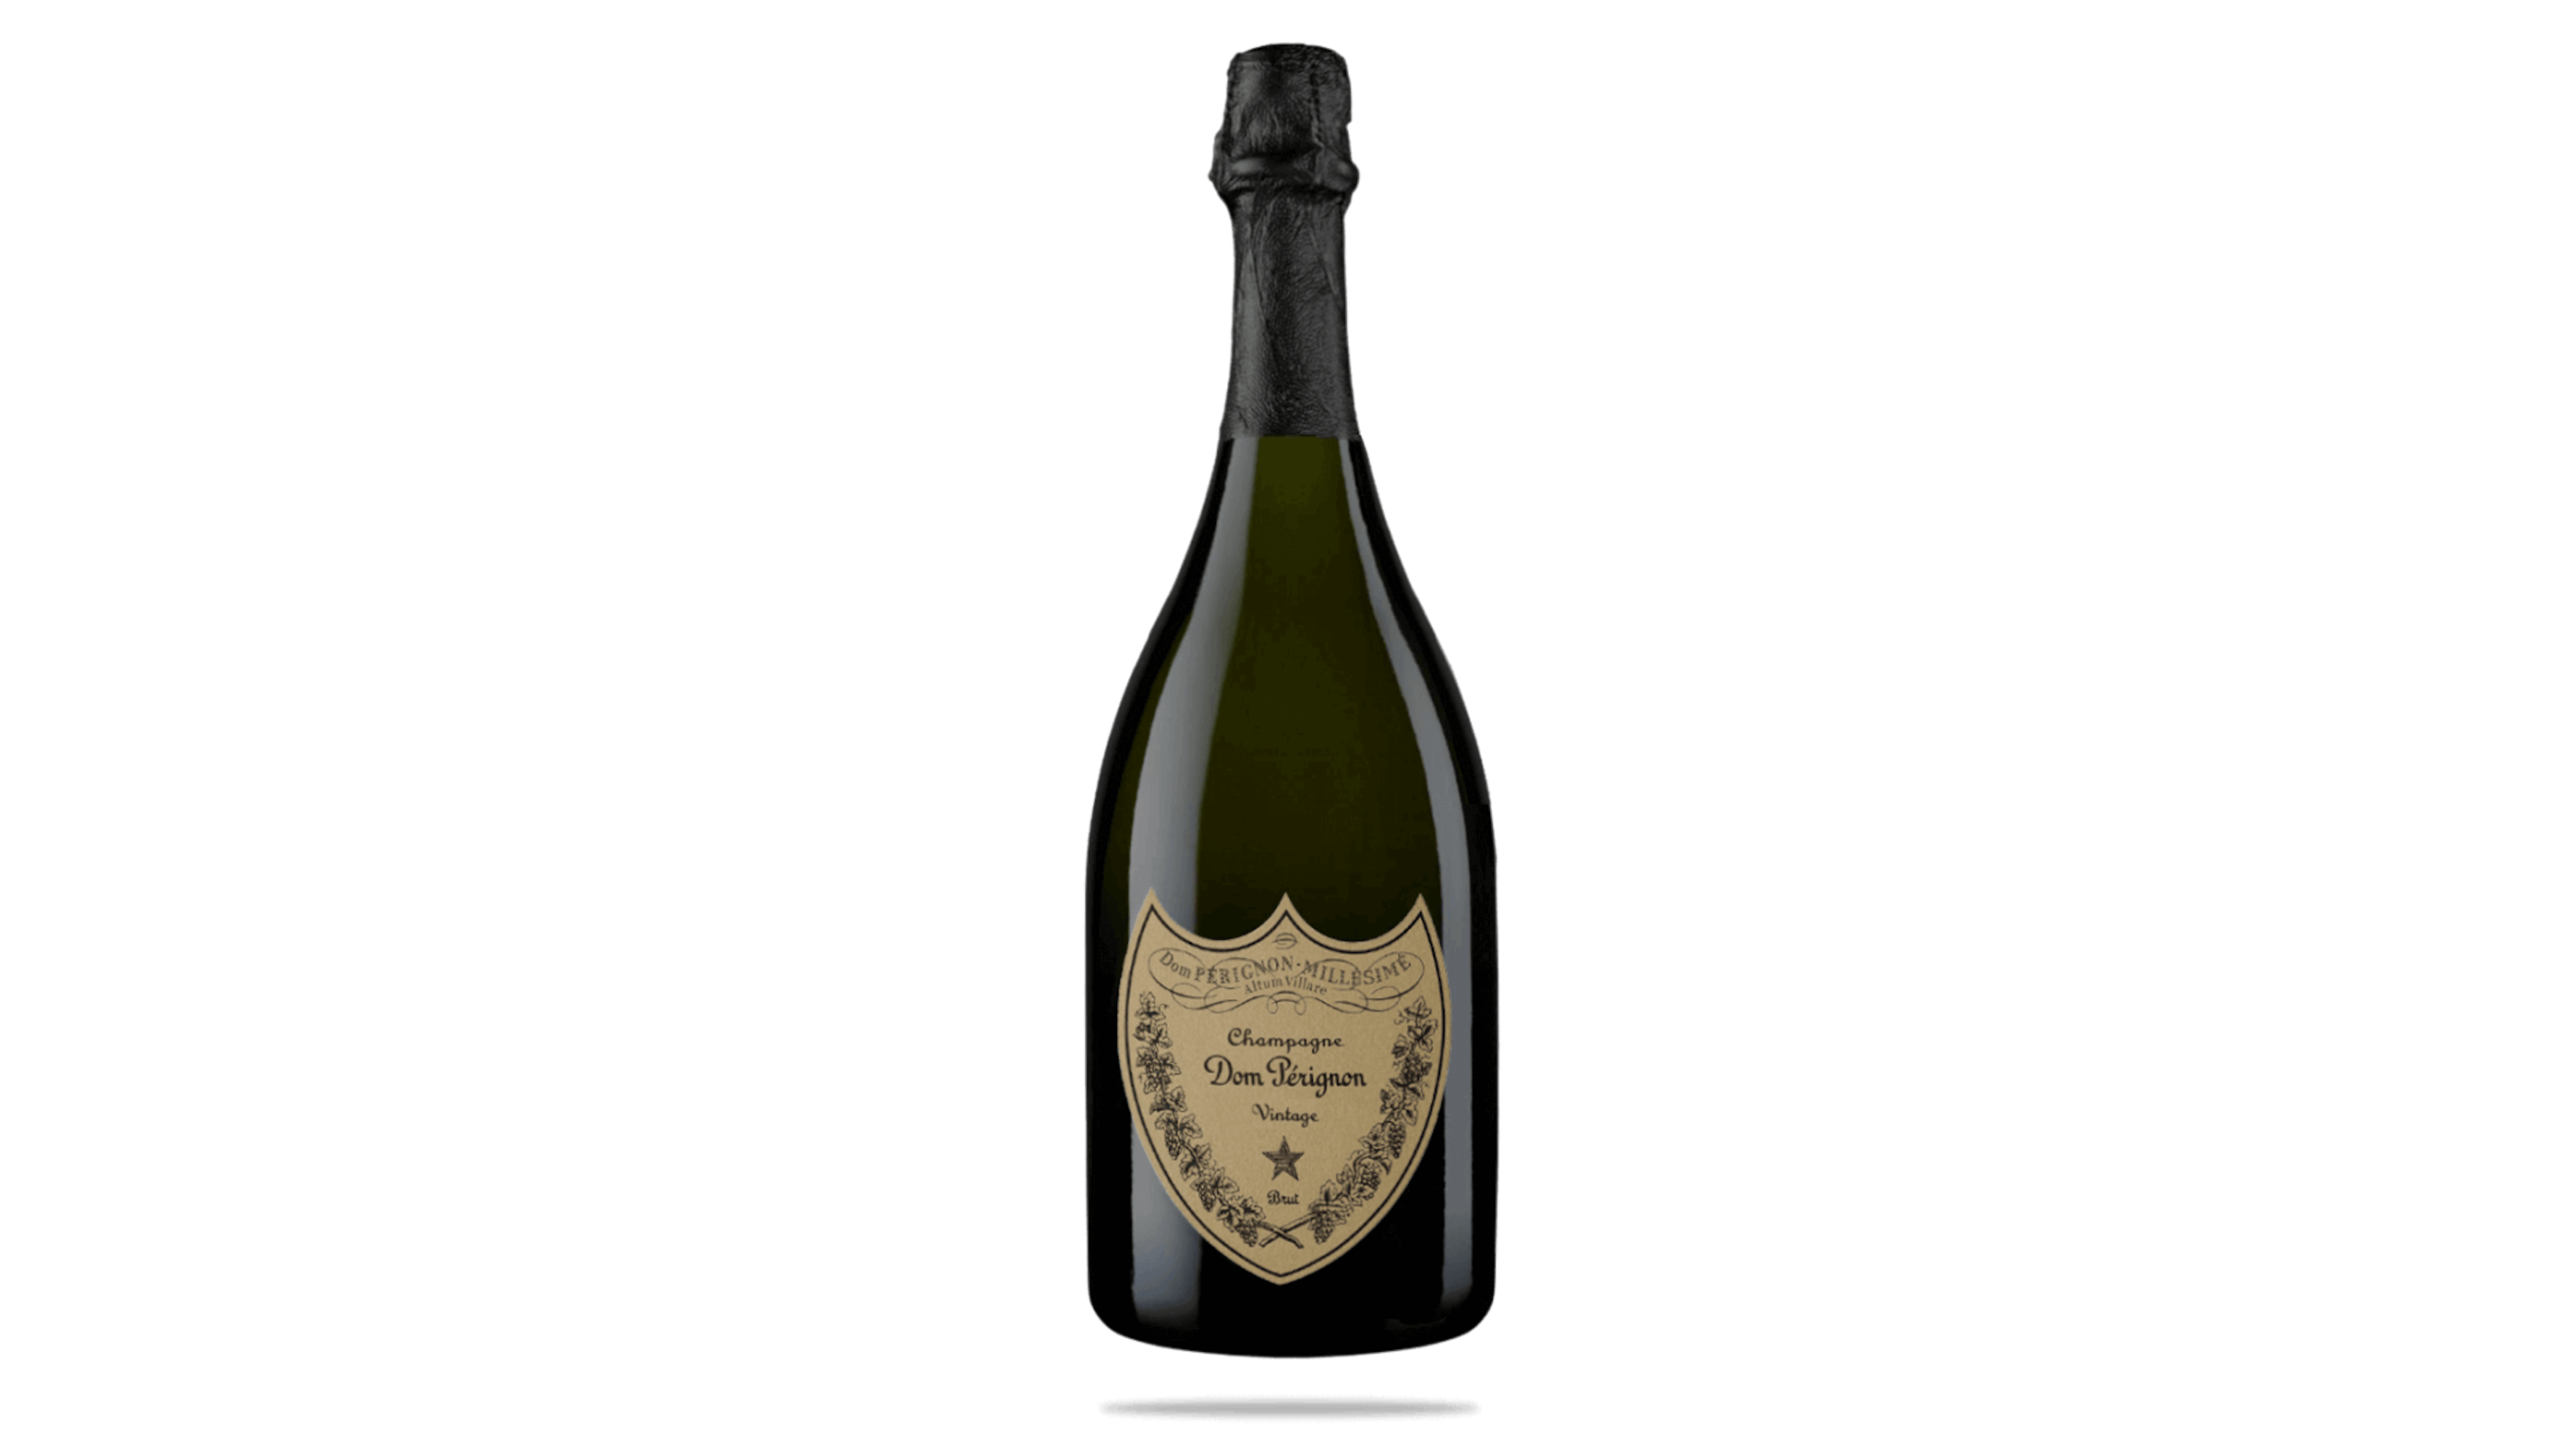 Dom Perignon Vintage 2013 - Champagne